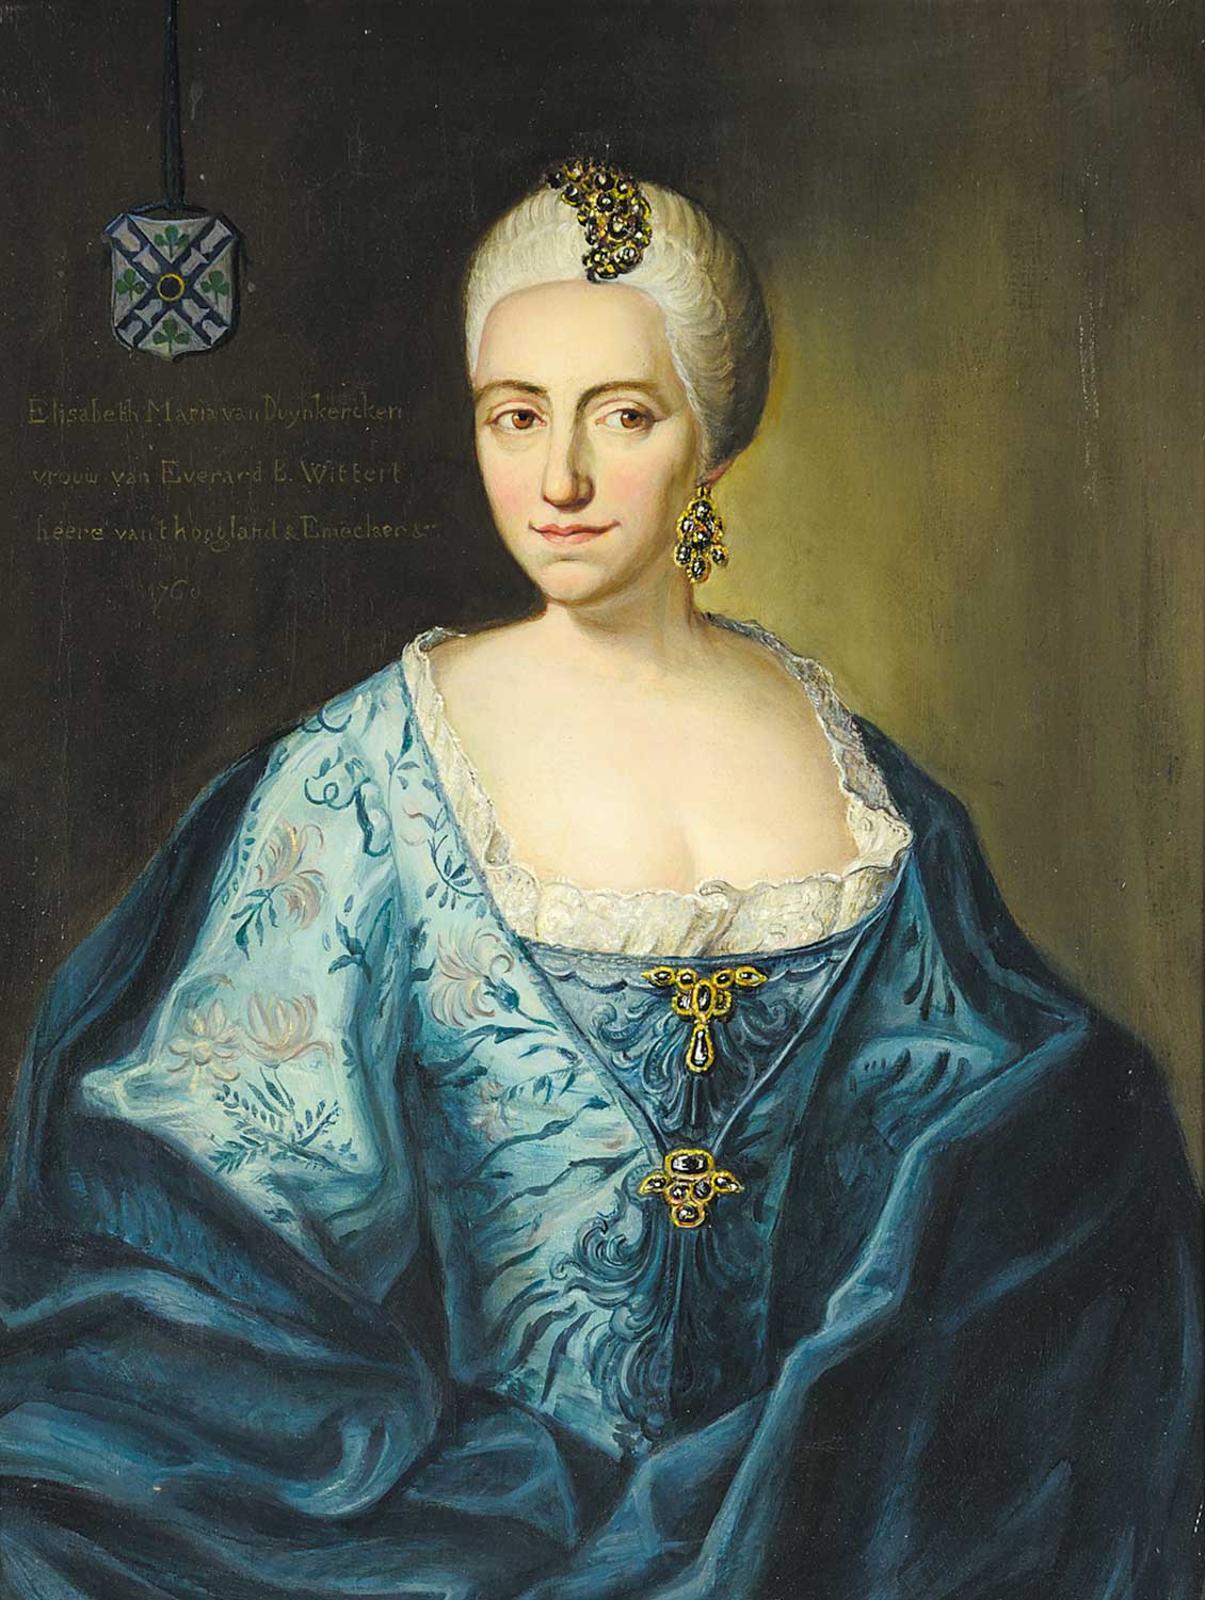 Dutch School - Elisabeth Maria van Duynkercken vrouw van Everard B. Wittert heere van thoogland and Emeclaer, 1760